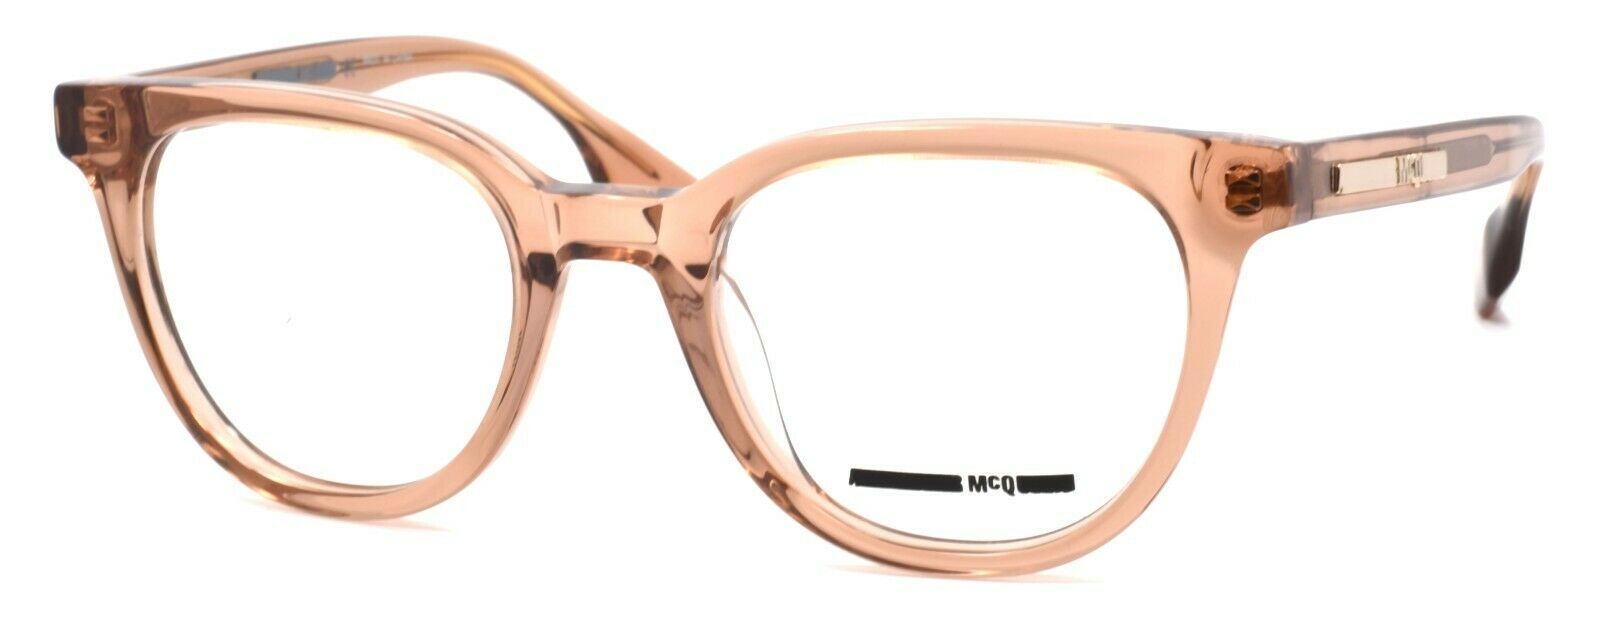 1-McQ Alexander McQueen MQ0030O 004 Women's Eyeglasses Frames 49-21-140 Pink-889652011370-IKSpecs